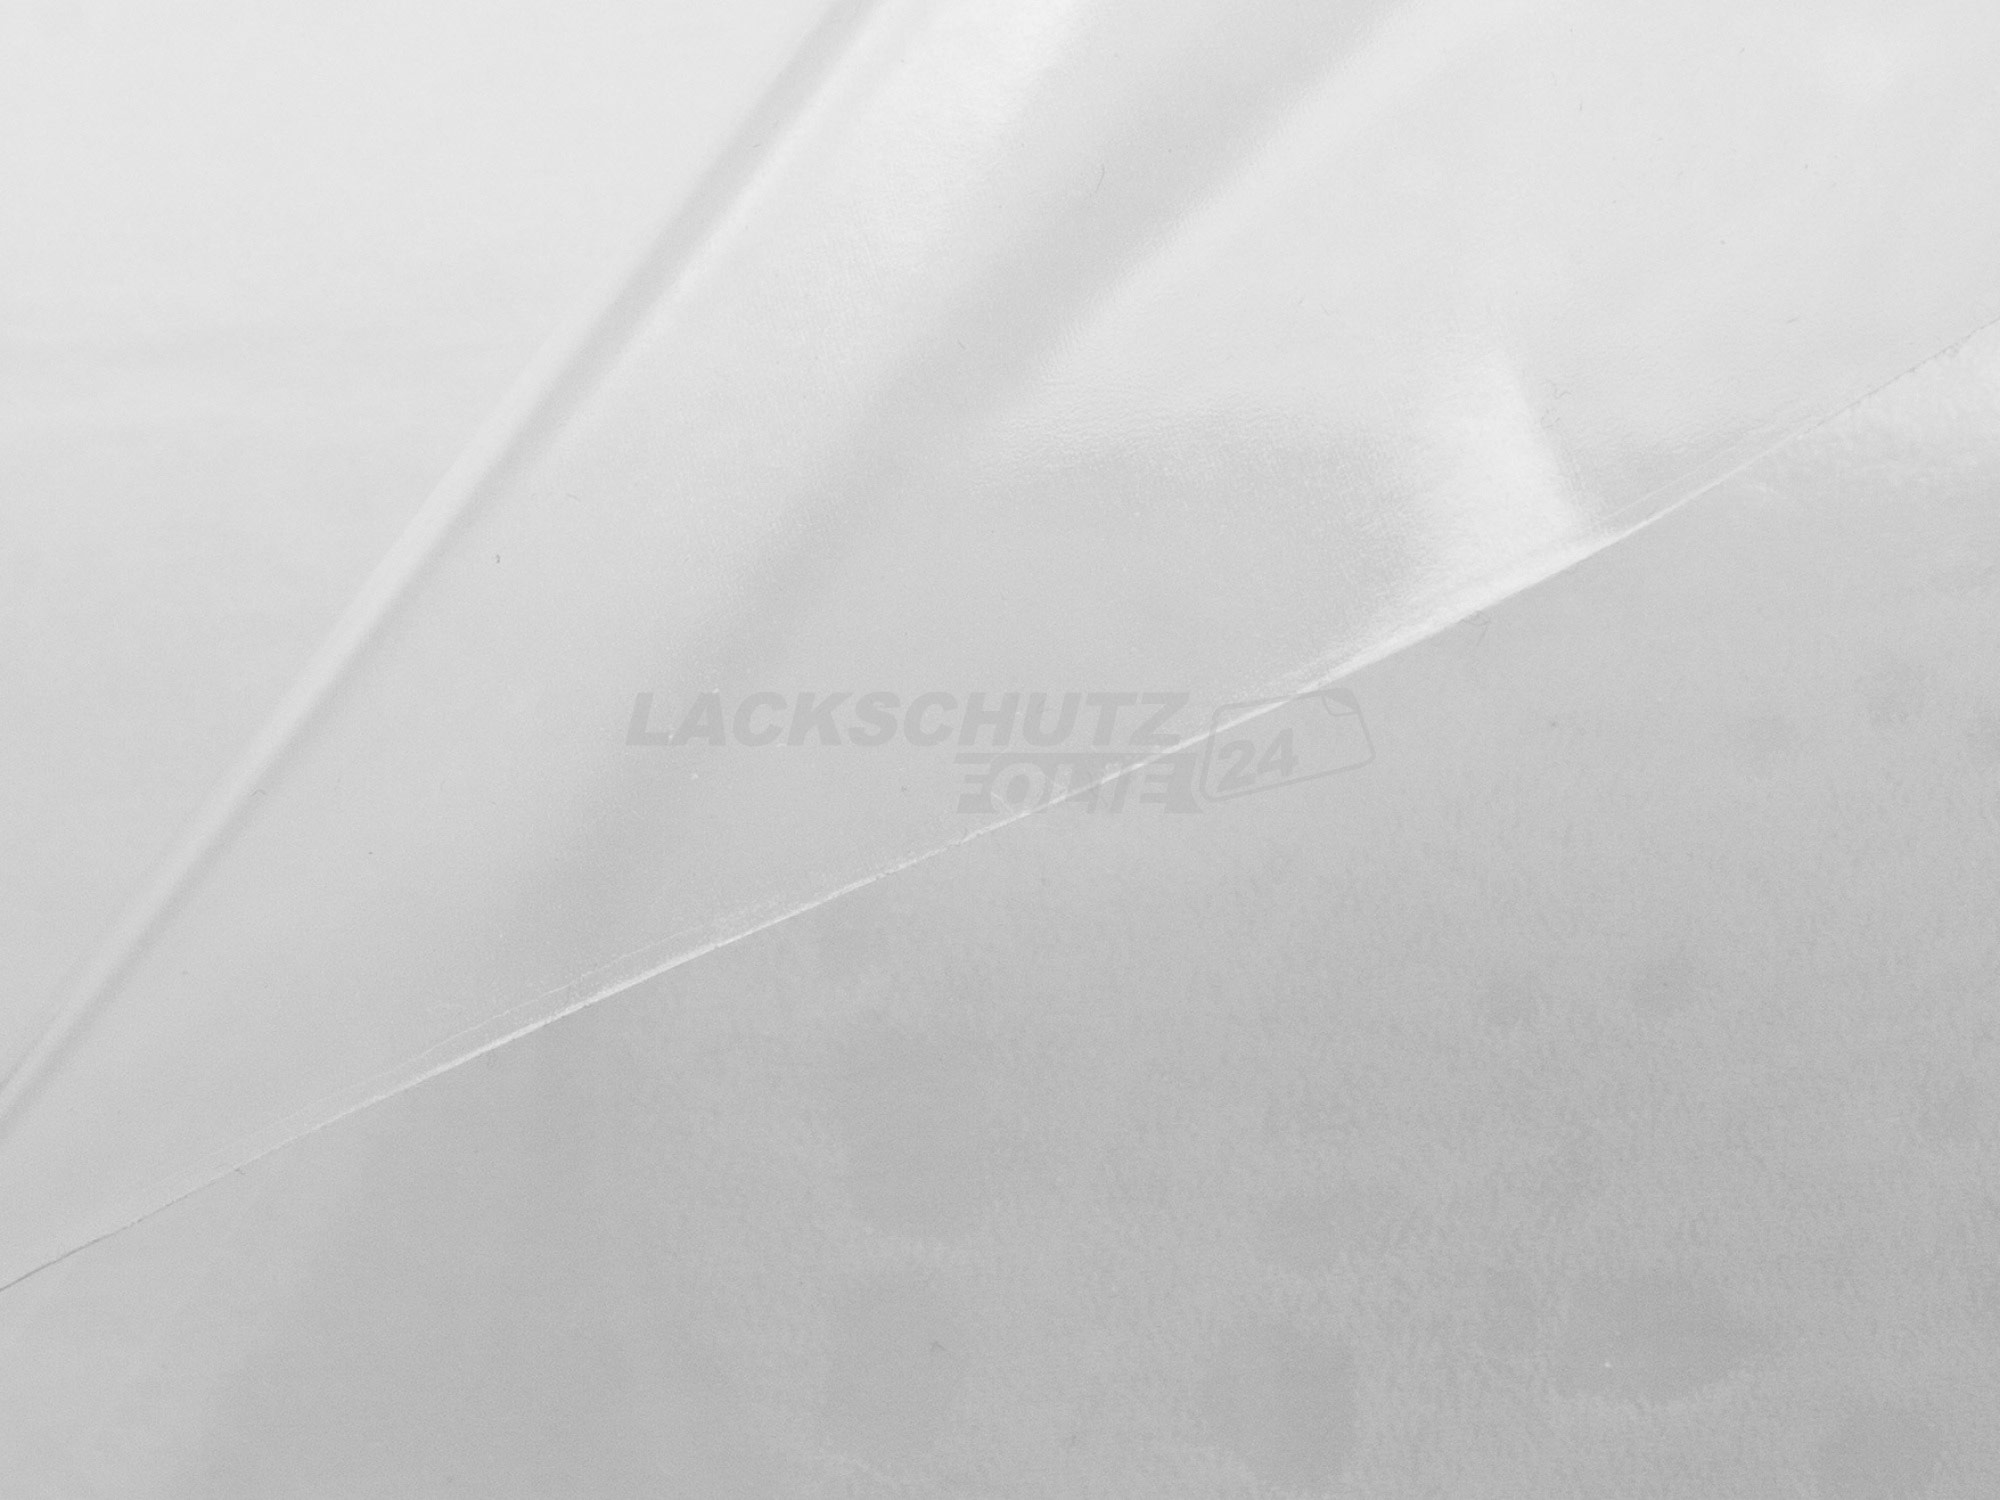 Ladekantenschutzfolie - Transparent Glatt Hochglänzend für Audi A6 Limousine C5, Typ 4B, bis BJ 2004